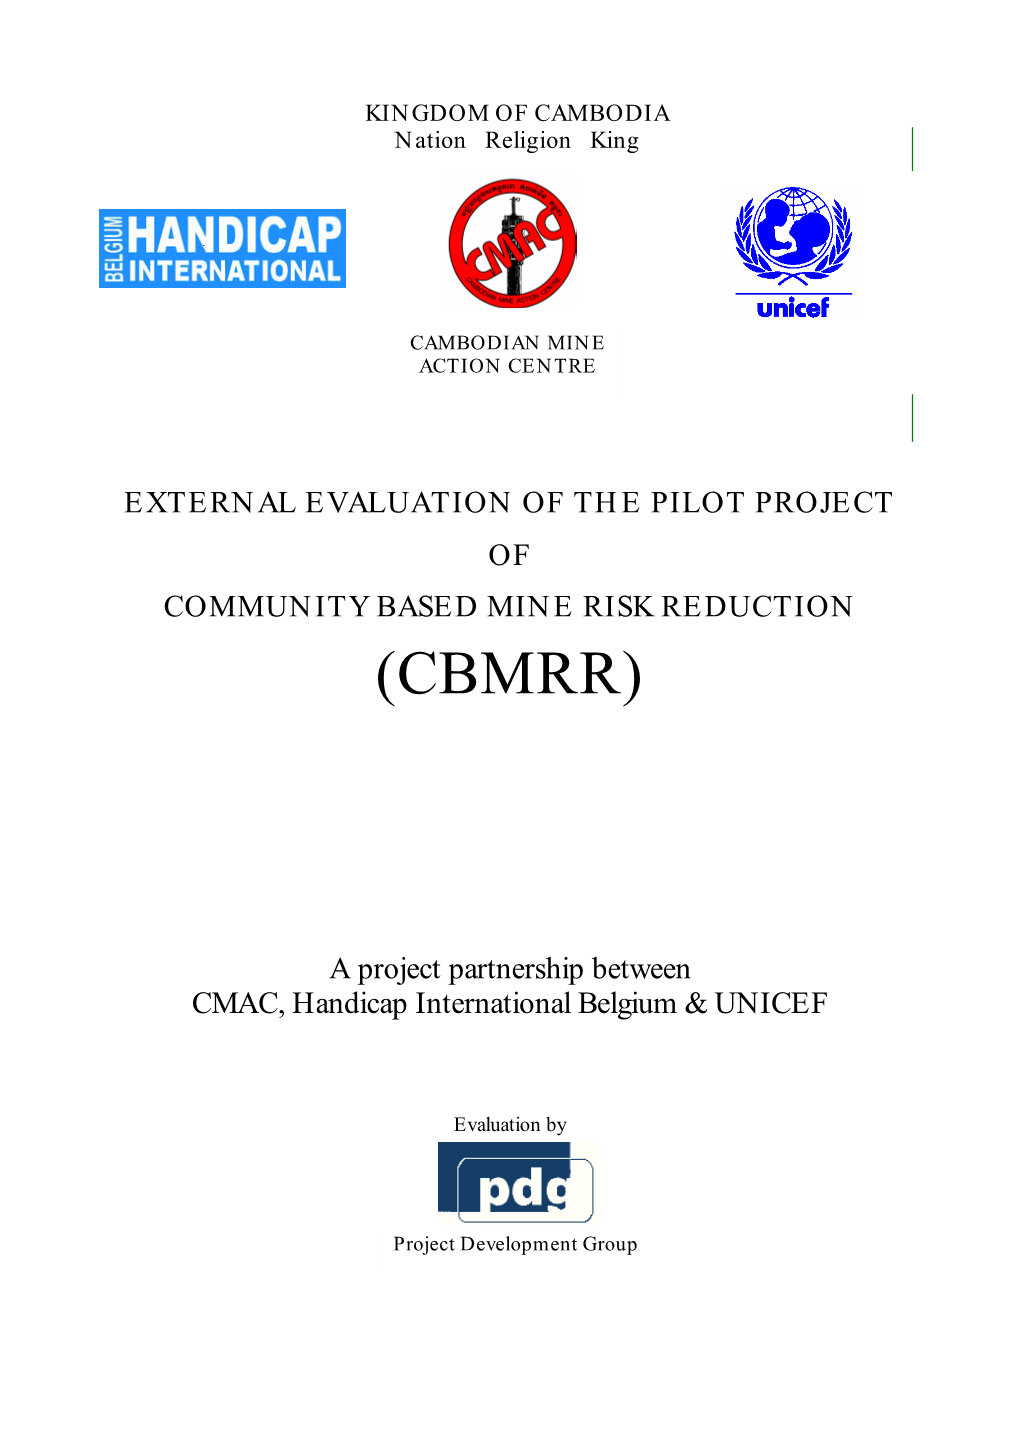 CBMRR Final Evaluation Report Dec 2002